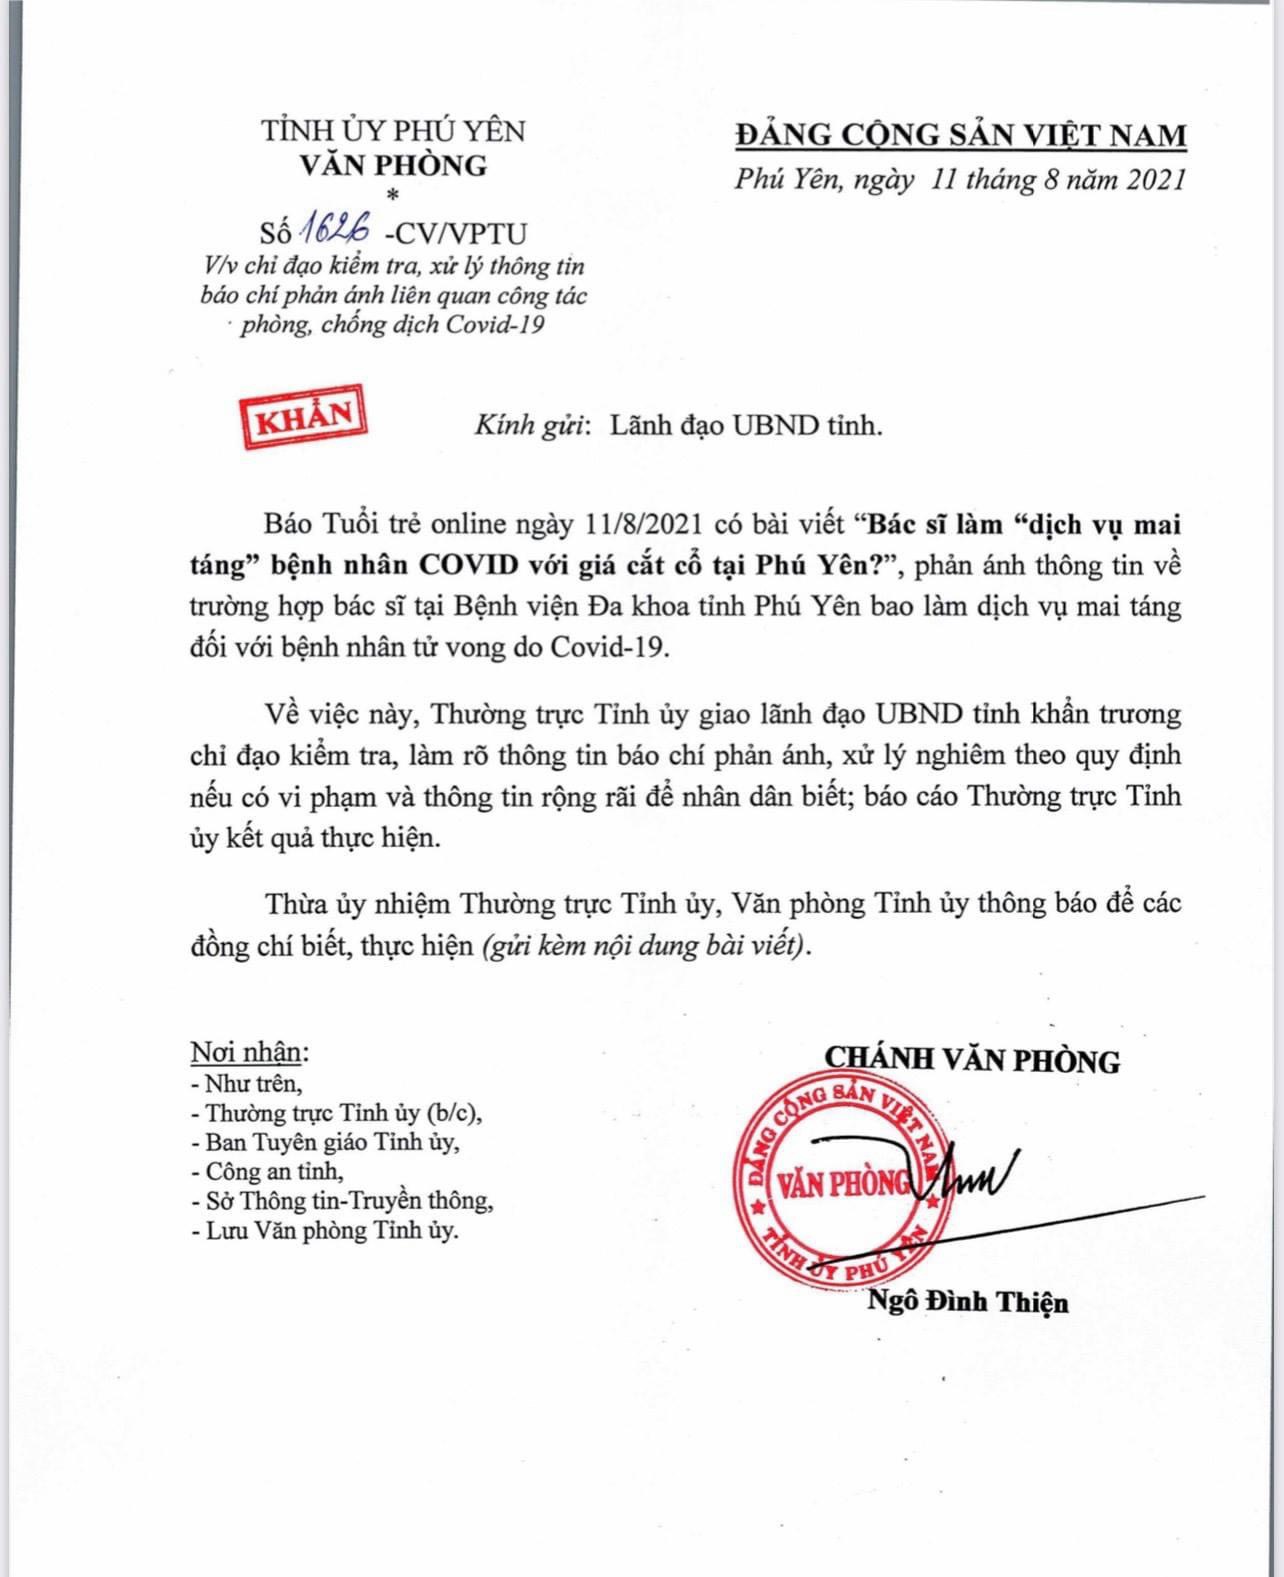 Văn phòng Tỉnh ủy Phú Yên đã có công văn khẩn, xử lý thông tin bác sĩ bao làm dịch vụ mai táng người mắc COVID-19 với giá kinh doanh cắt cổ